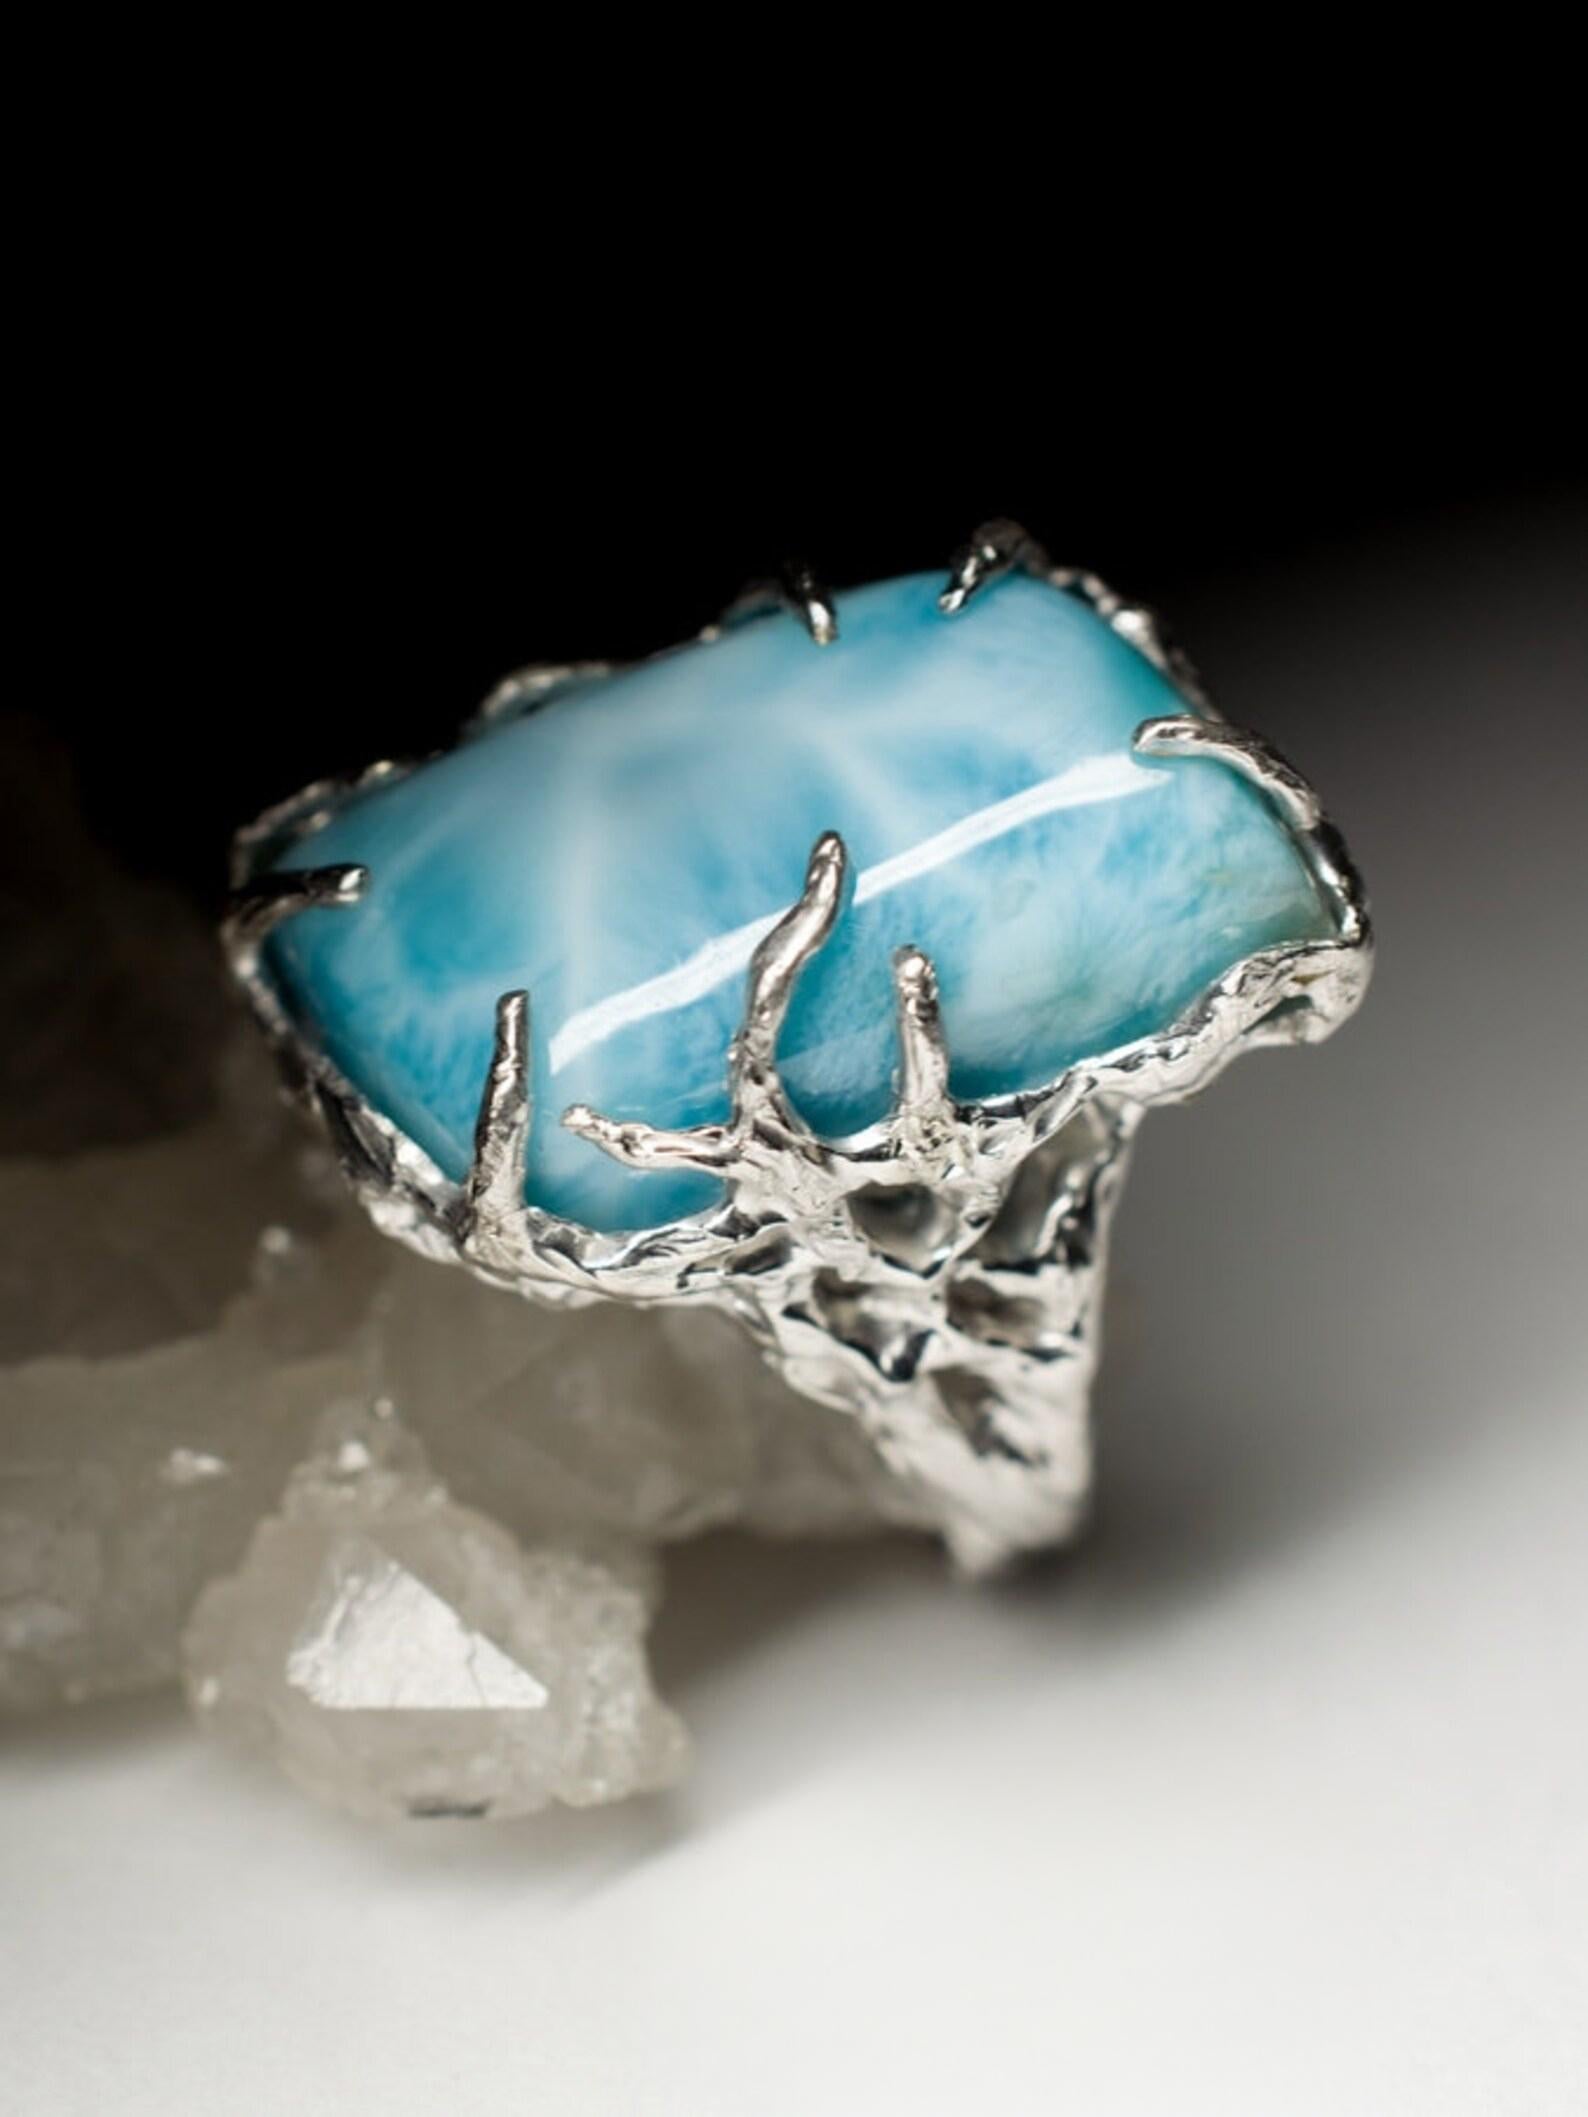 light blue opaque gemstone